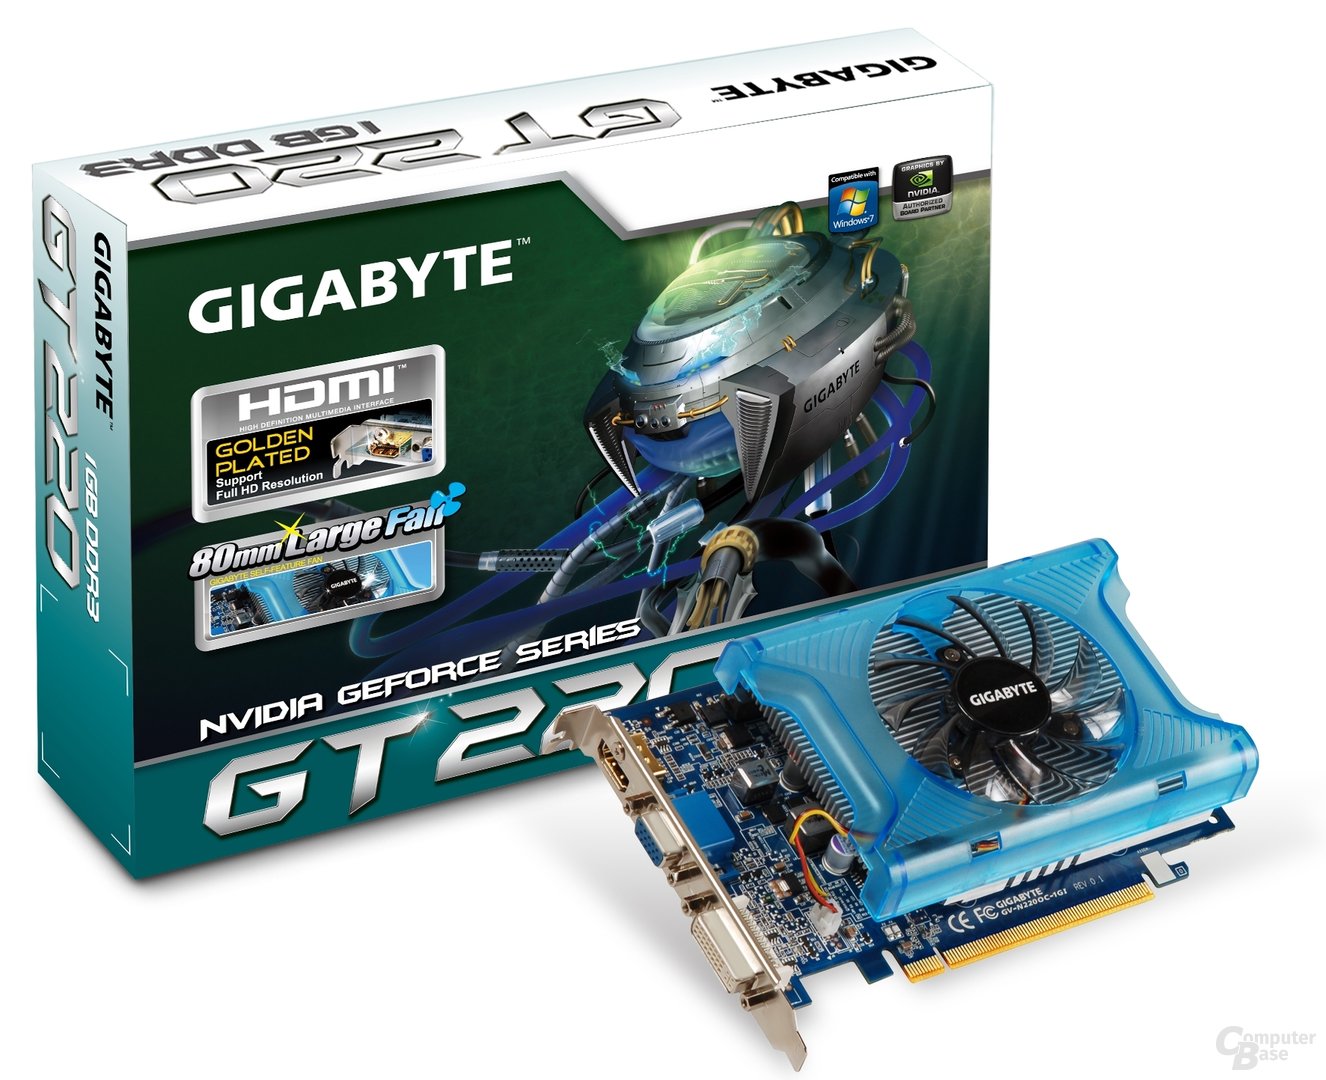 Gigabyte GeForce GT 220